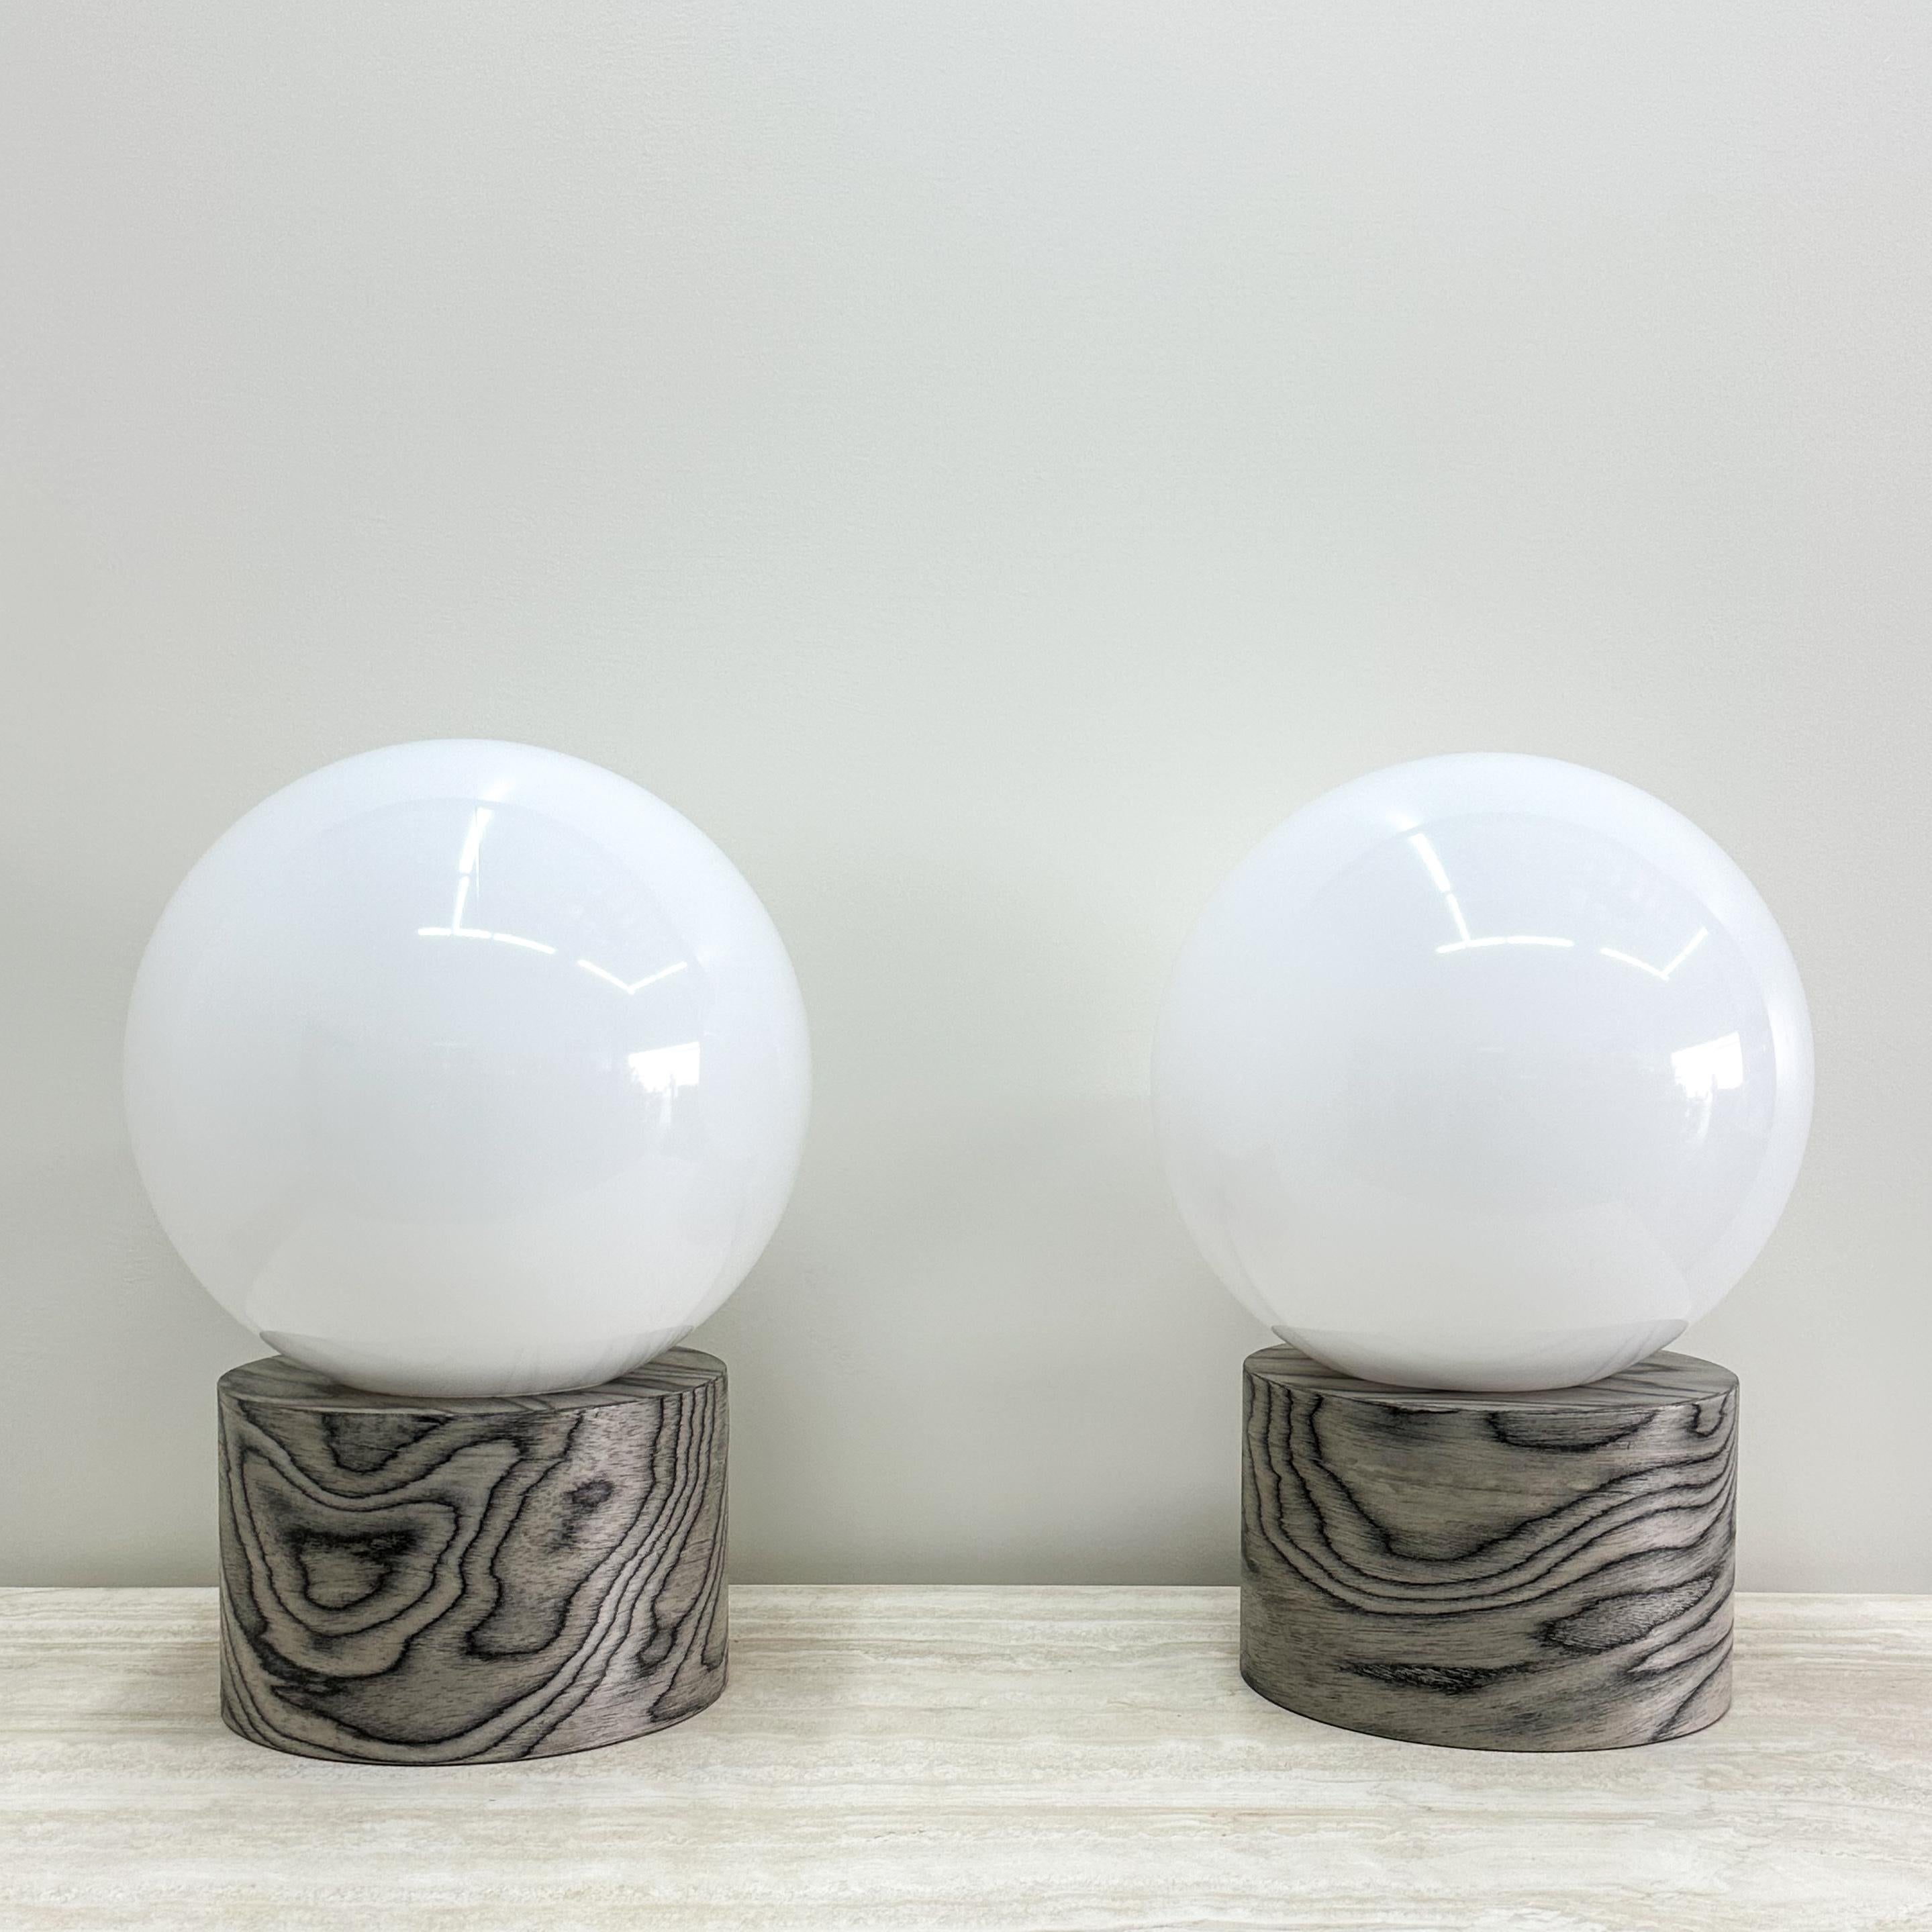 Paire de lampes Globe en placage et acrylique d'Ettore Sottsass.

Les lampes sont de fabrication récente et ont été plaquées avec le placage ALPI original, conçu par Ettore Sottsass. Le placage a été scellé avec une finition satinée pour améliorer